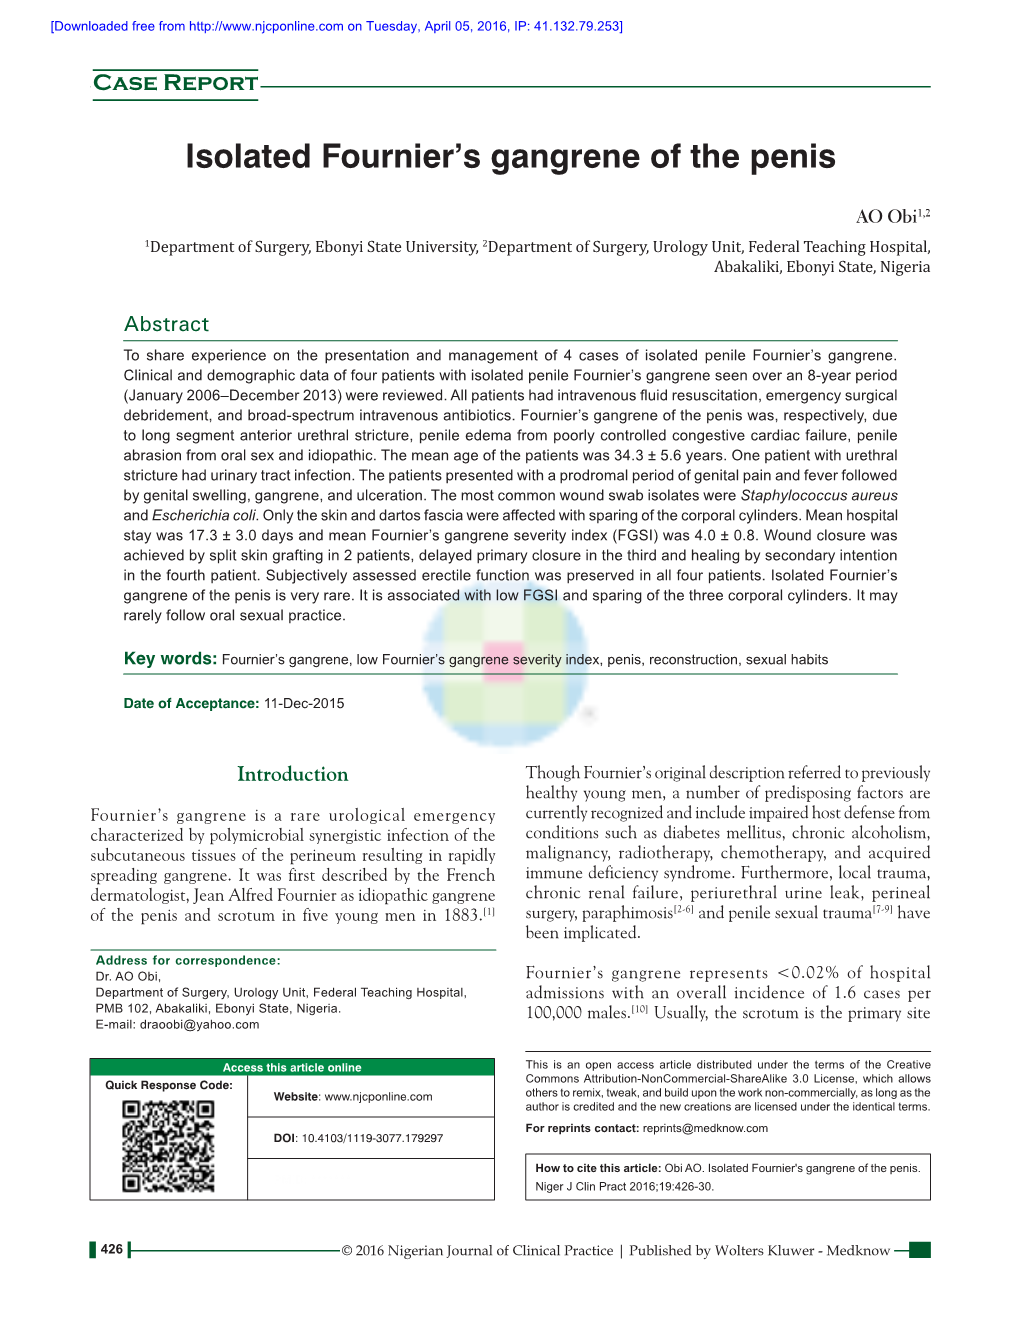 Isolated Fournier's Gangrene of the Penis